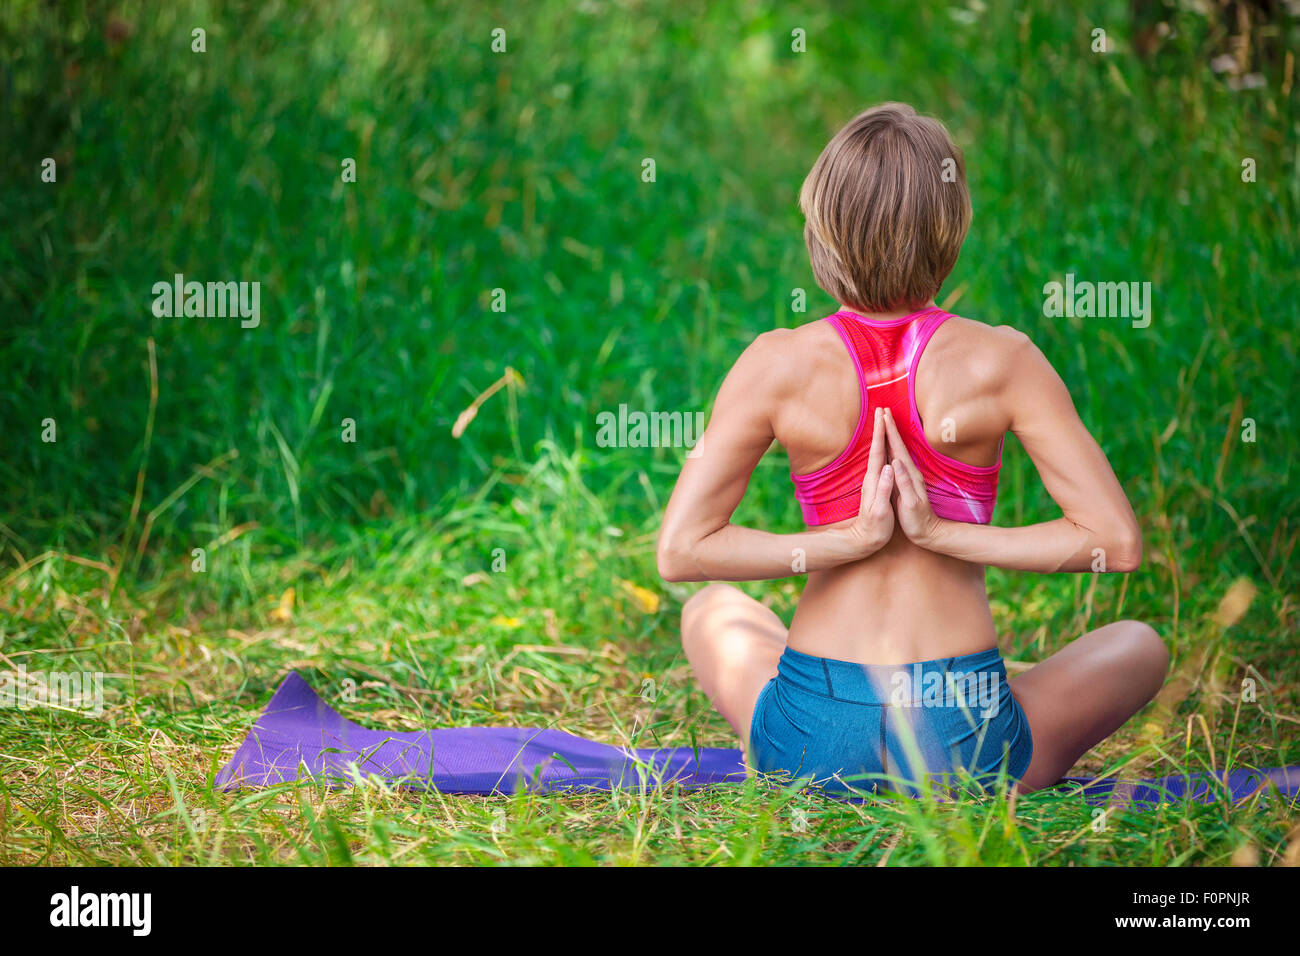 Giovane donna caucasica meditando nella posizione del loto all'aperto Foto Stock